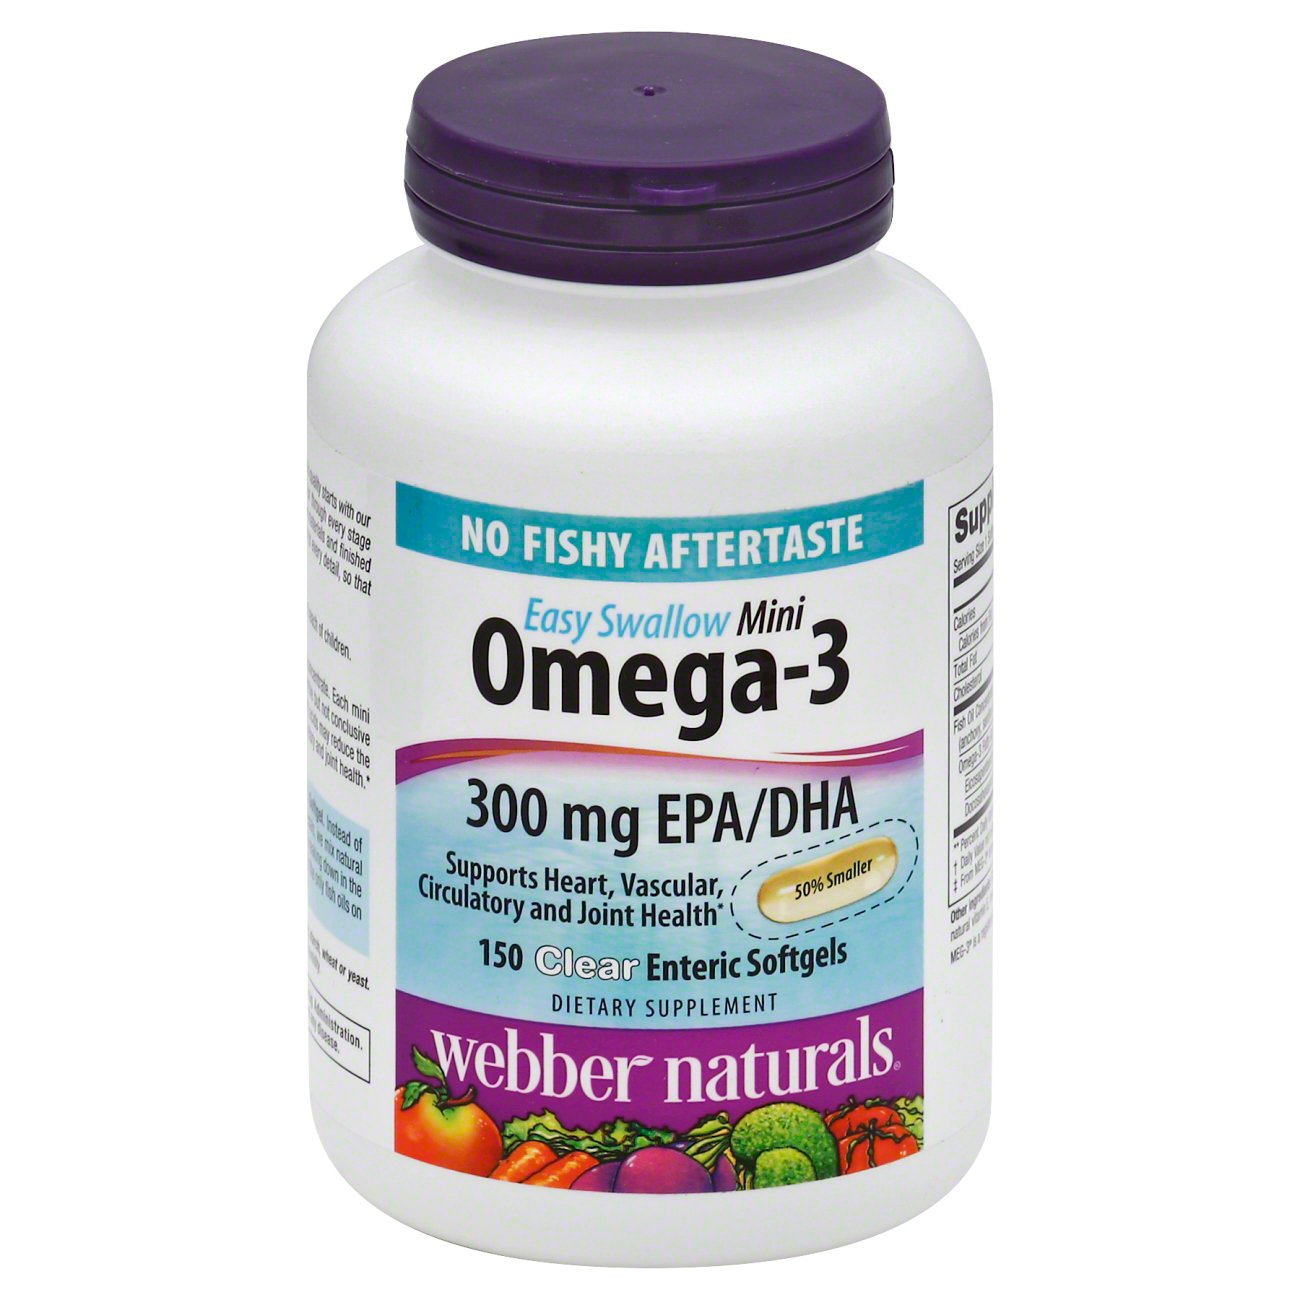 toon Broek Misschien Webber Naturals Omega 3 Minis 300 mg EPA/DHA, Softgel - Shop Diet & Fitness  at H-E-B